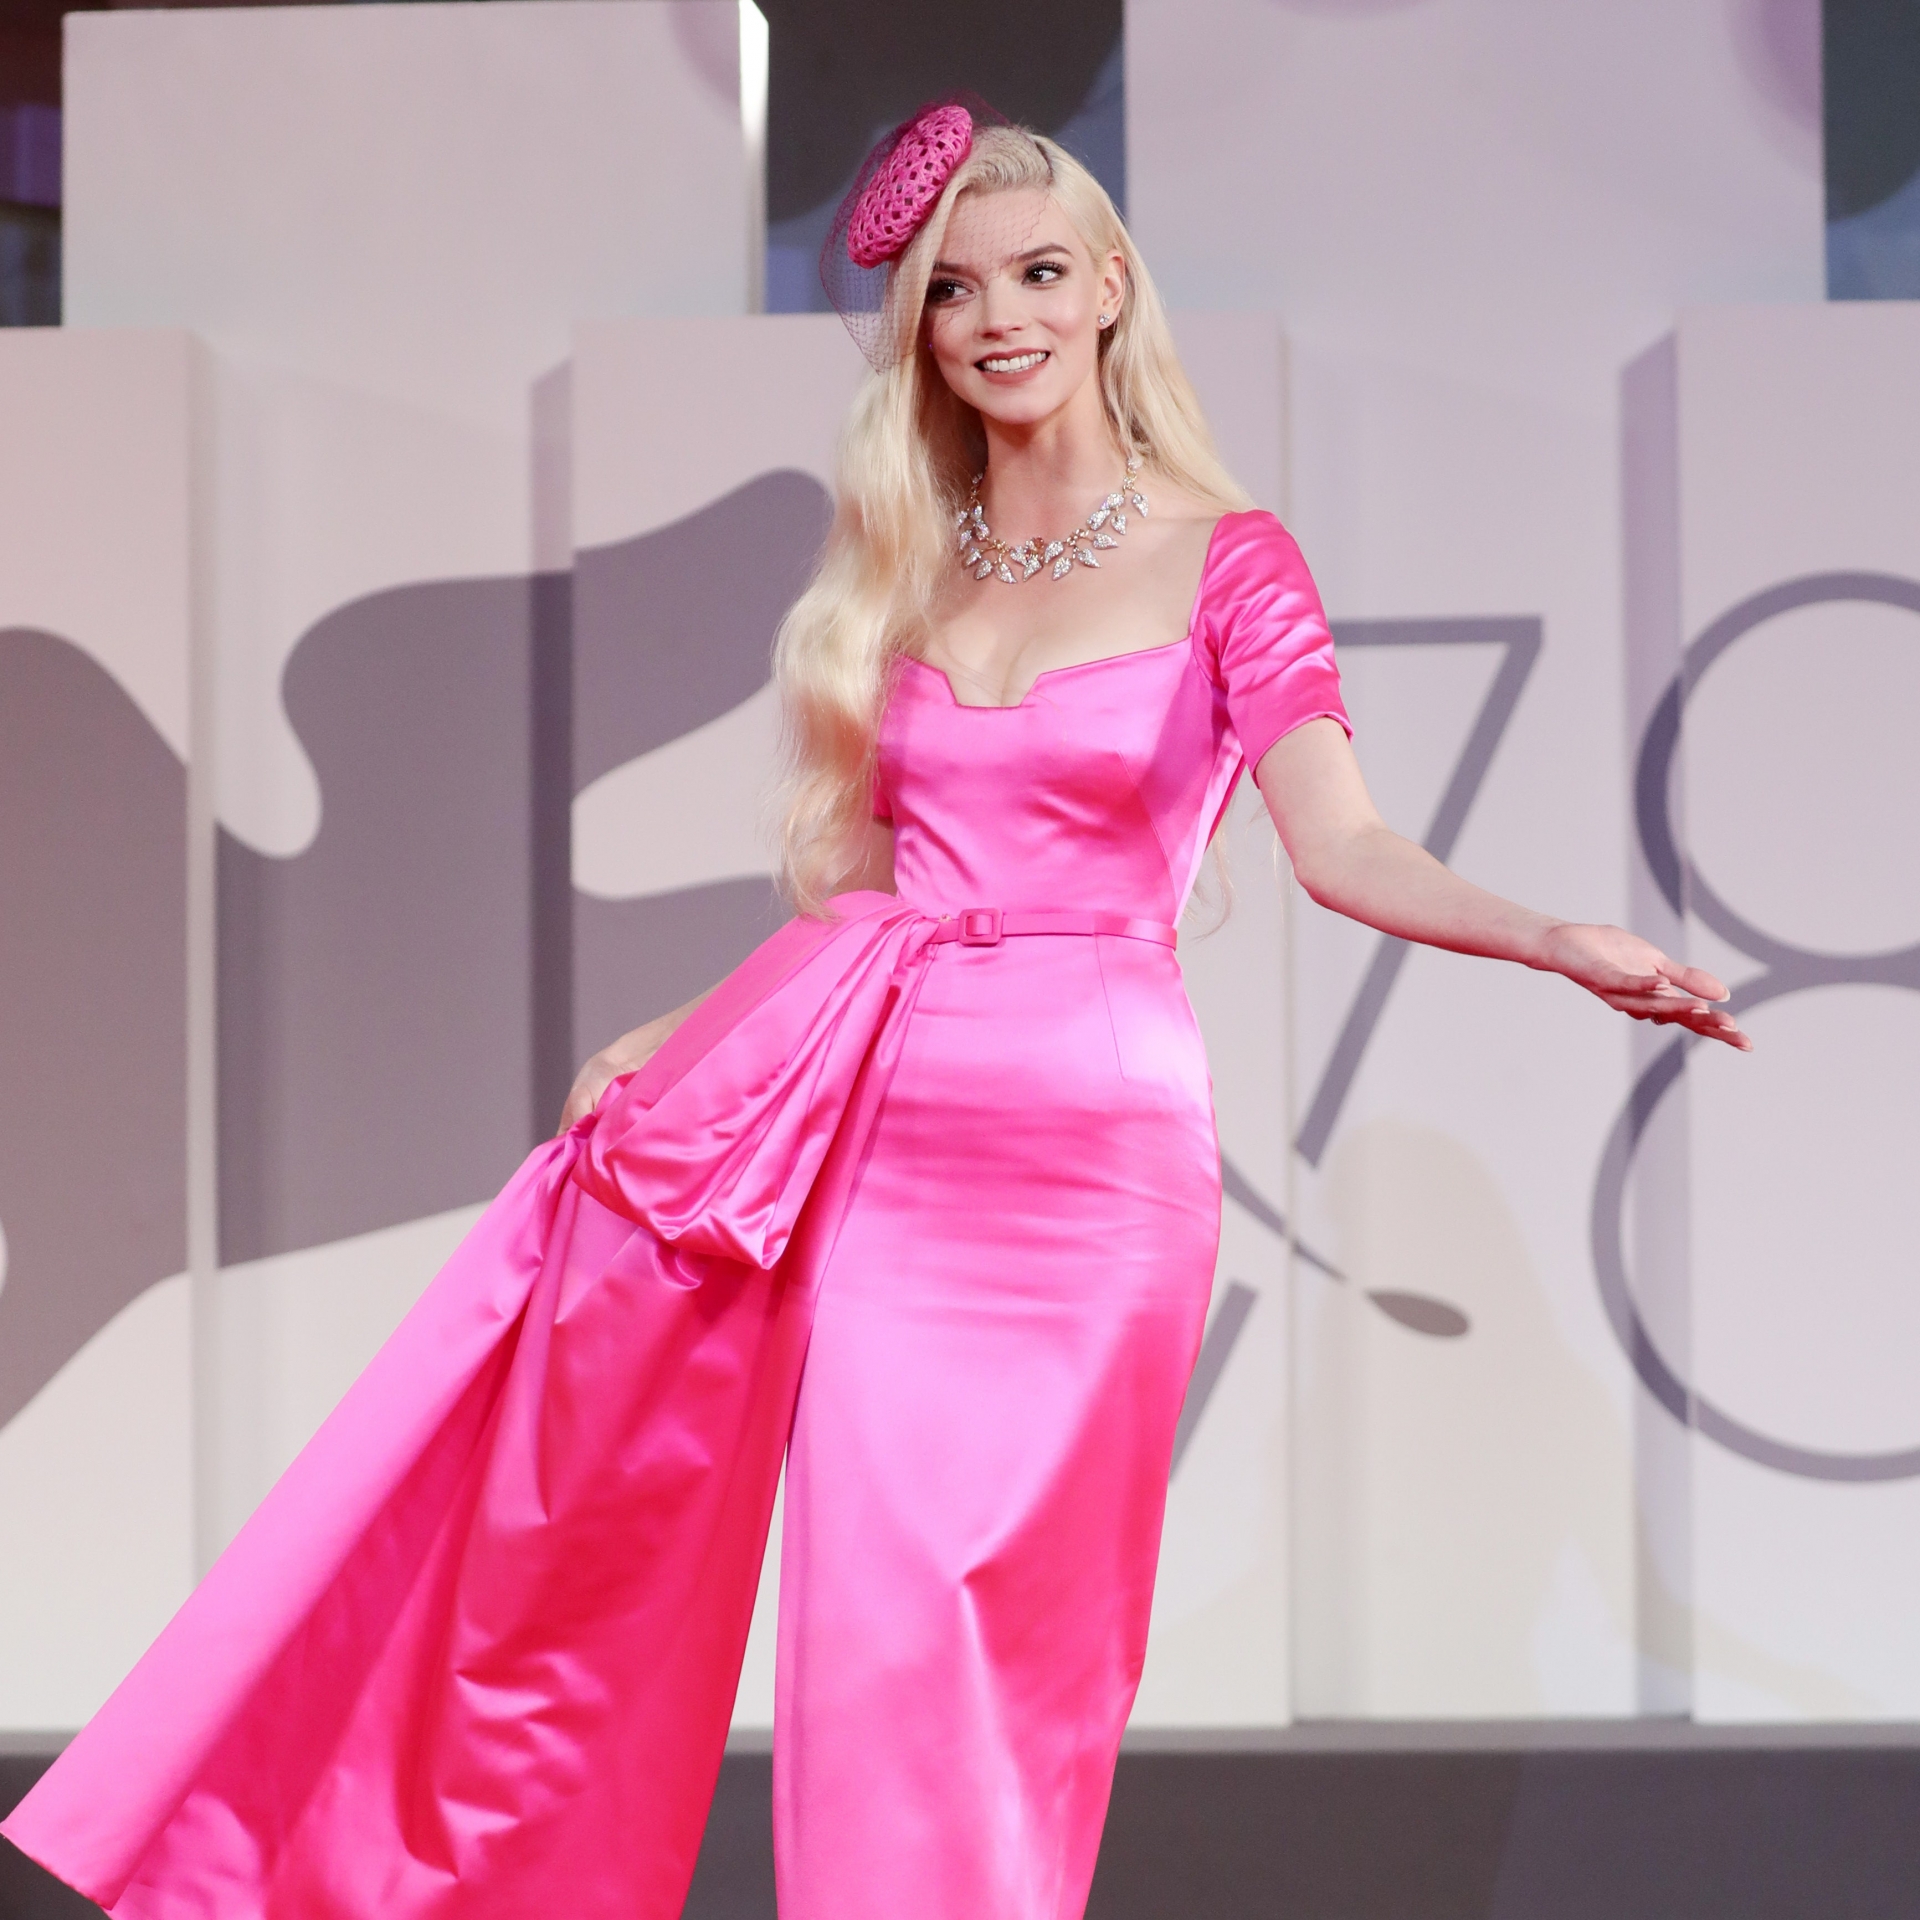 Hay mới đây nhất là sự xuất hiện tại LHP Venice 2021 trong bộ váy màu hồng neon nổi bật tuy có phần hơi nhăn nhúm nhưng cô nàng vẫn 'đốn tim' người hâm mộ với vẻ ngoài xinh đẹp như búp bê Barbie.